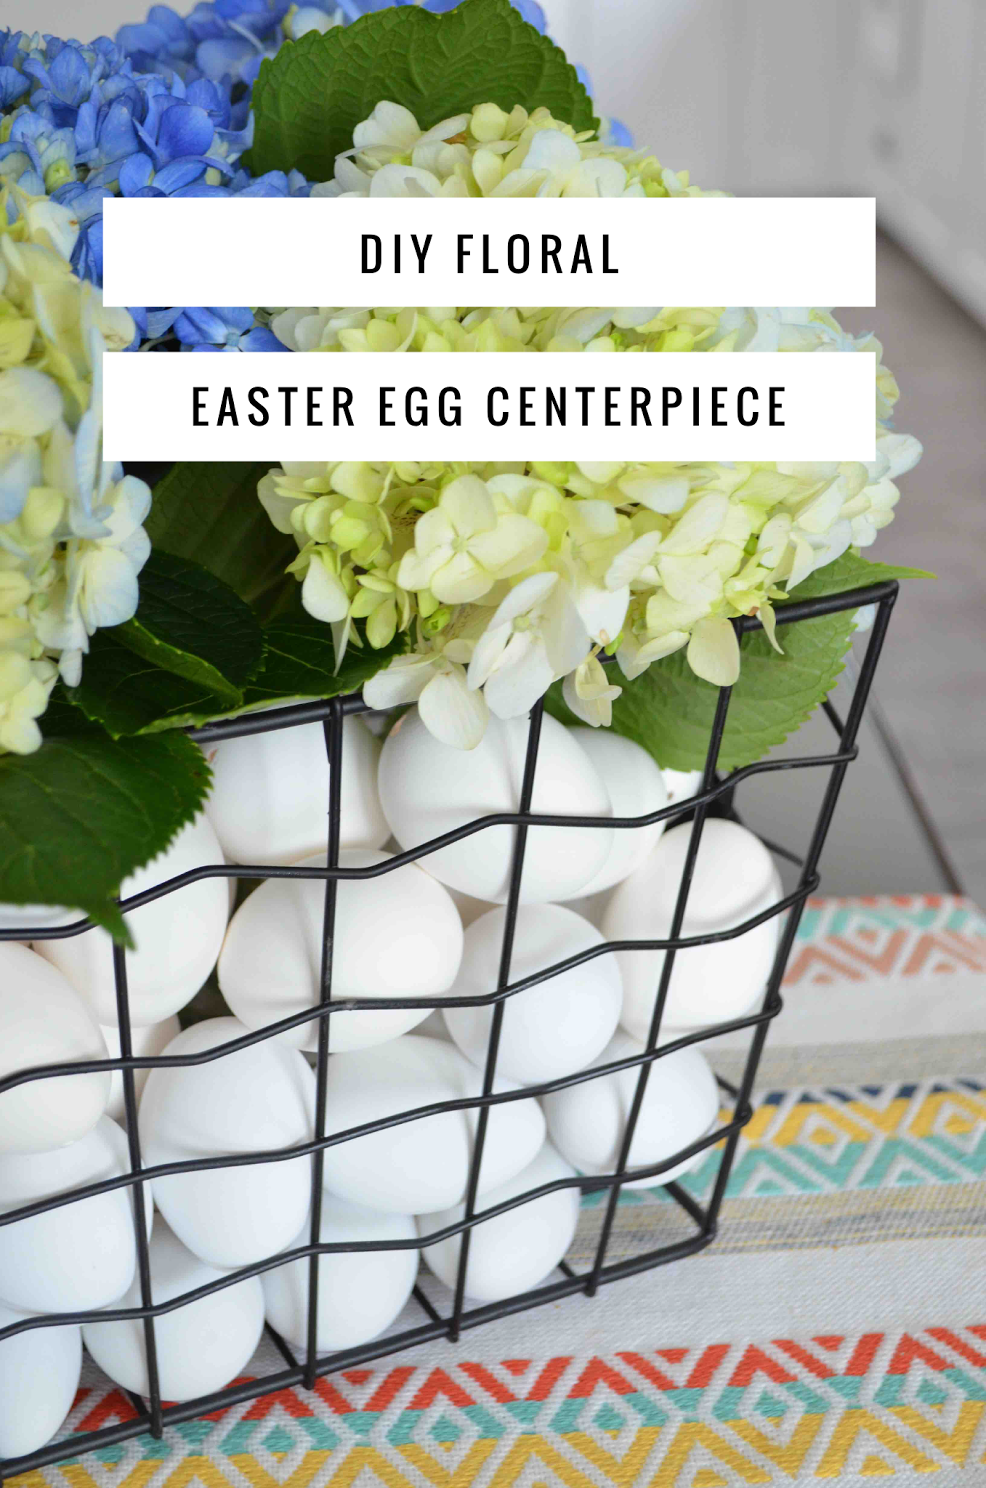 DIY Floral Easter Egg Centerpiece